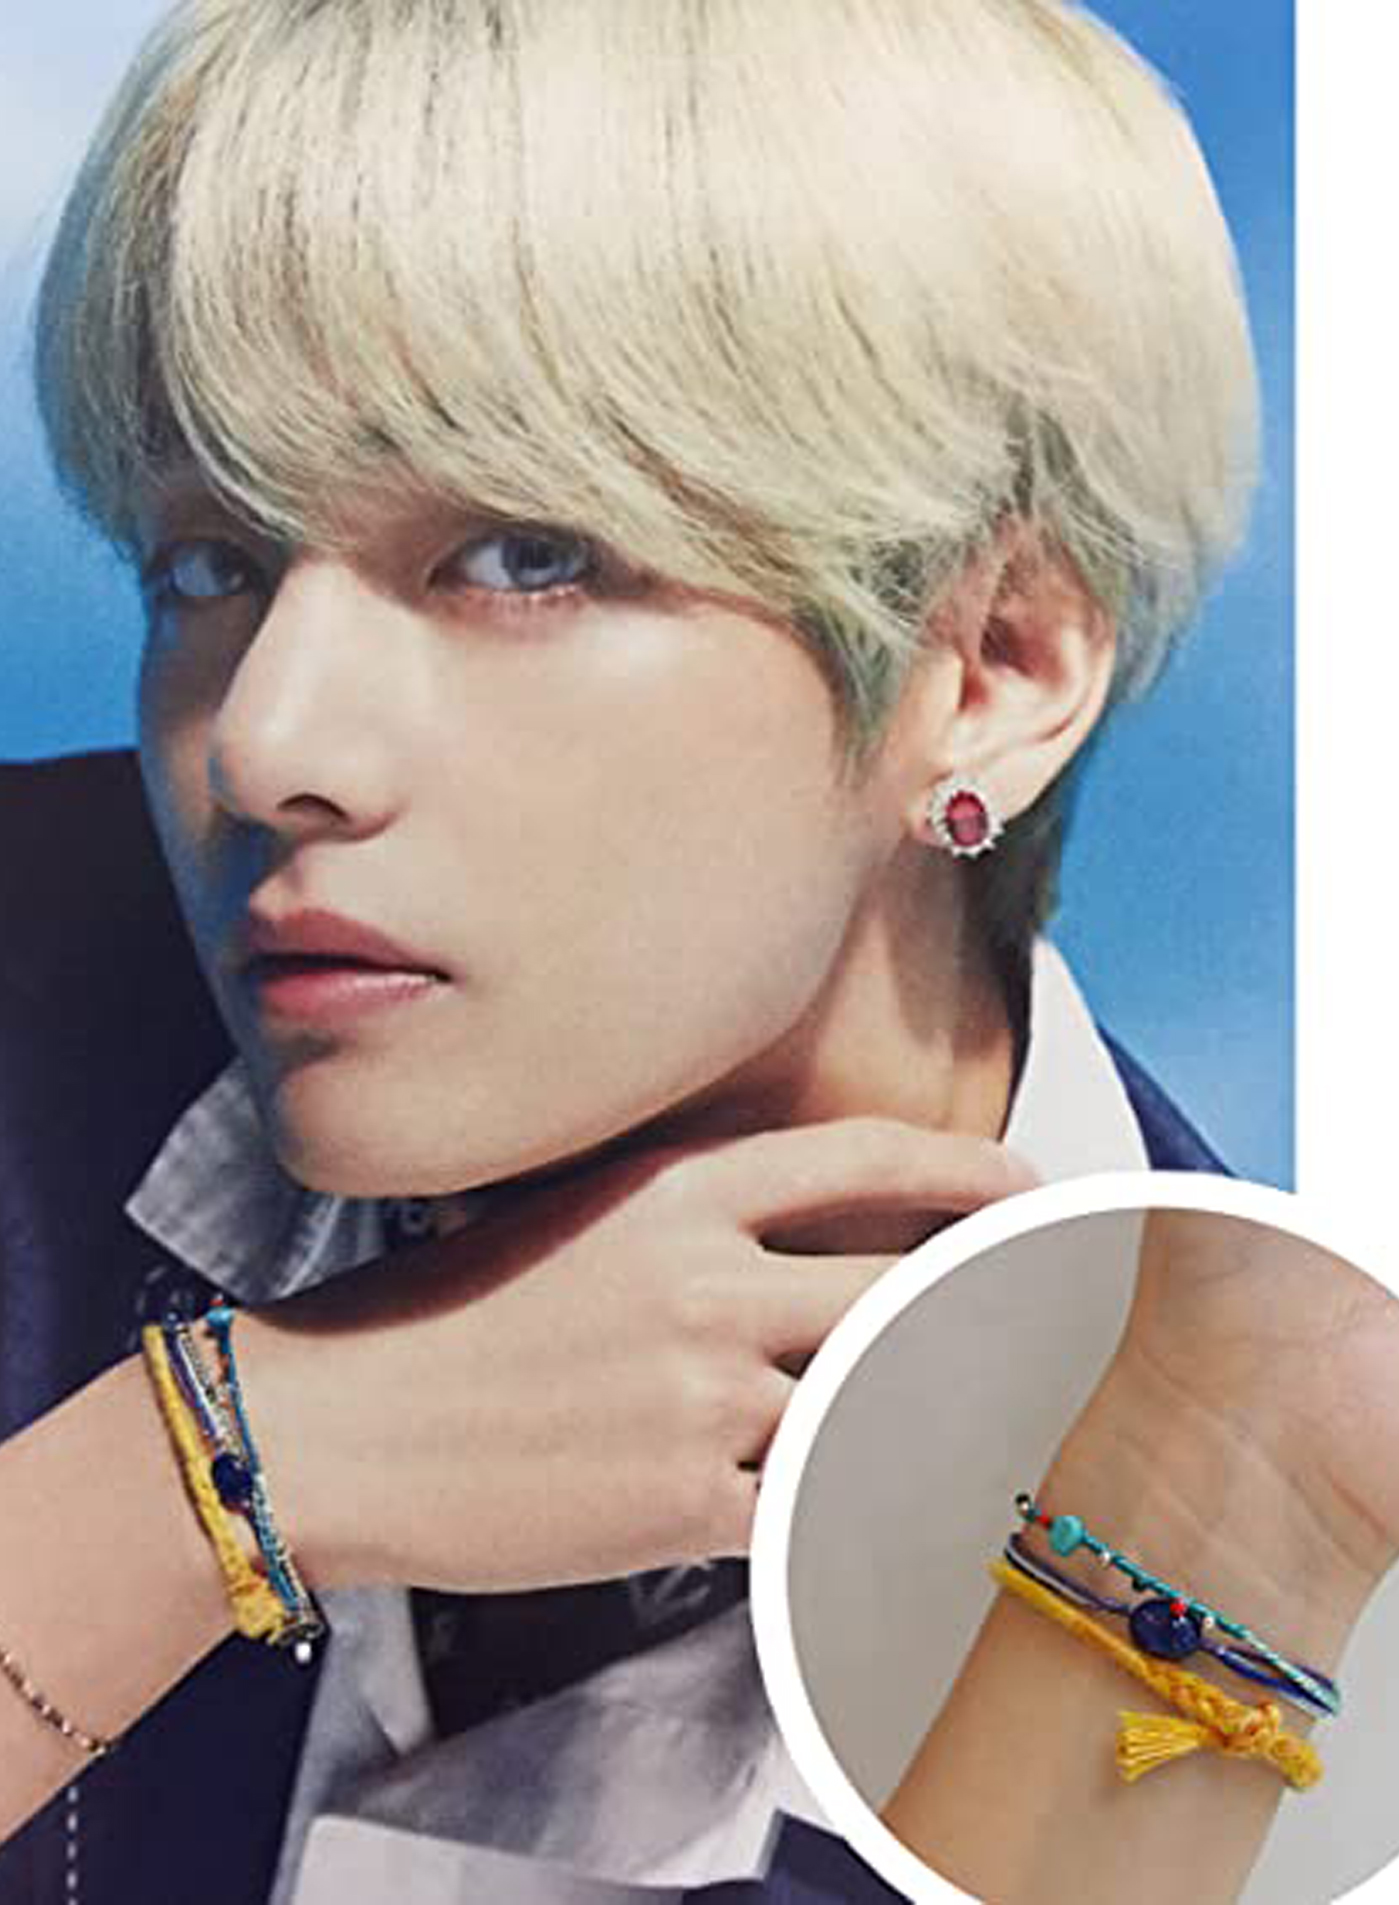 Buy BTS Fashion Inspired Jin V & Jungkook Bracelets Online in India - Etsy